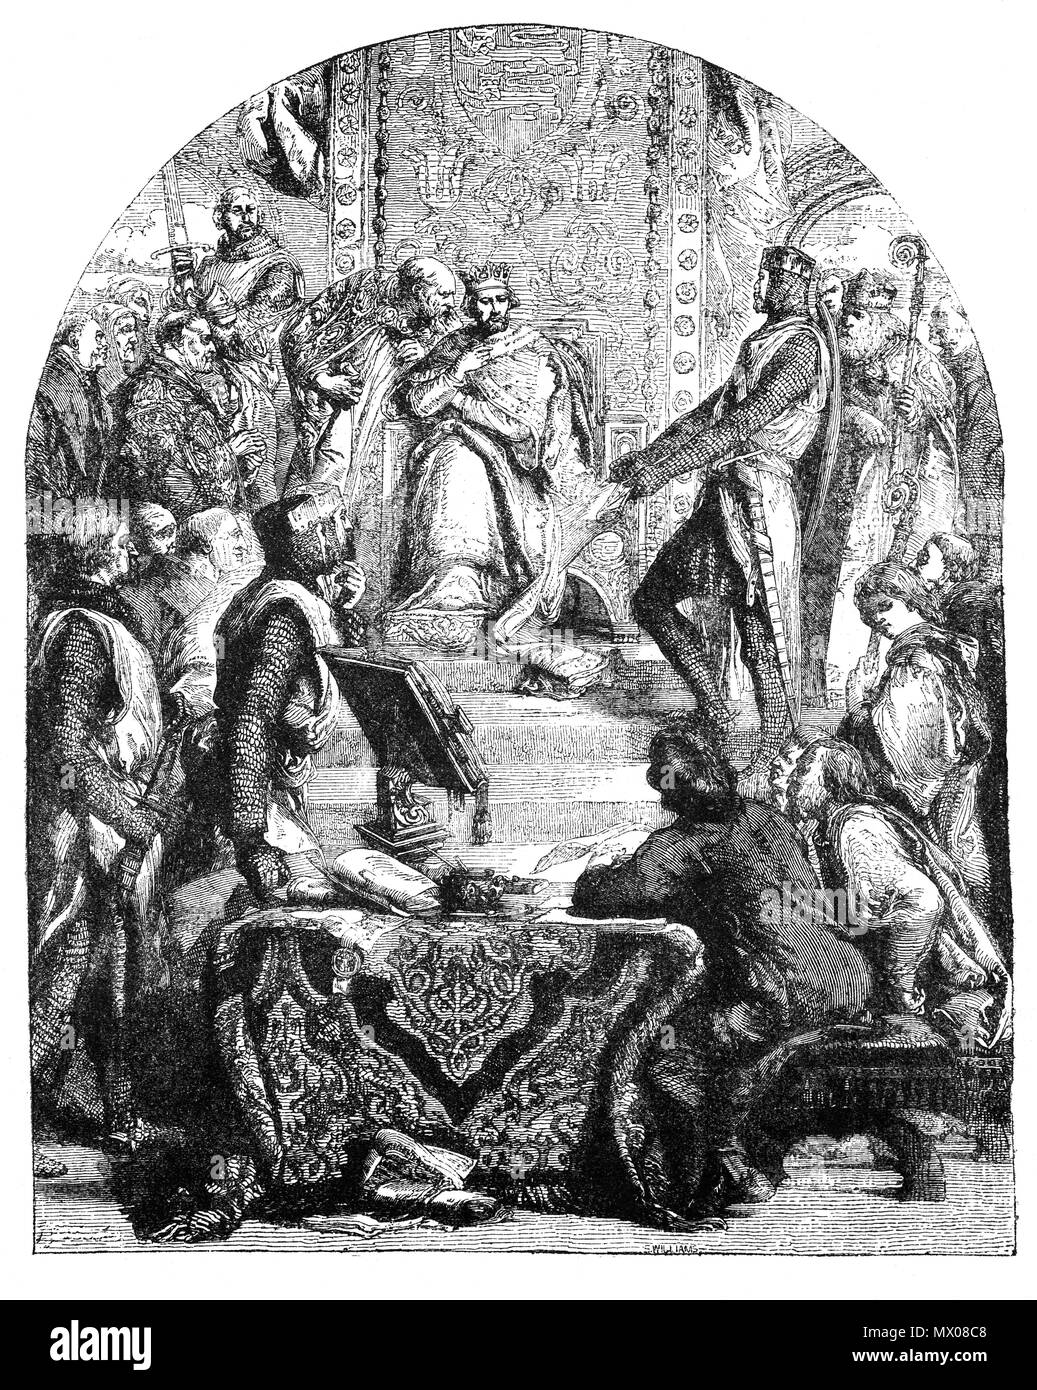 Enrico III (1207-1272), è stato molto importante per la storia della Magna Carta. In seguito il Re Giovanni la sua morte nel 1216 Henry, solo un giovane ragazzo di età compresa tra i 9, ereditato il trono nel mezzo di una guerra civile e sull'orlo della sconfitta per il principe francese Louis (più tardi Re Luigi IX). Il 'minoranze' del governo guidato da William Marshal, provò a tentare i baroni ribelli torna a Enrico di lato da un nuovo rilascio della Magna Charta concedendo i diritti dei baroni ribelli avevano lottato per l. Il 11 febbraio 1225 il re Enrico III rilasciato quello che divenne la versione finale e definitiva di Magna Carta. Foto Stock